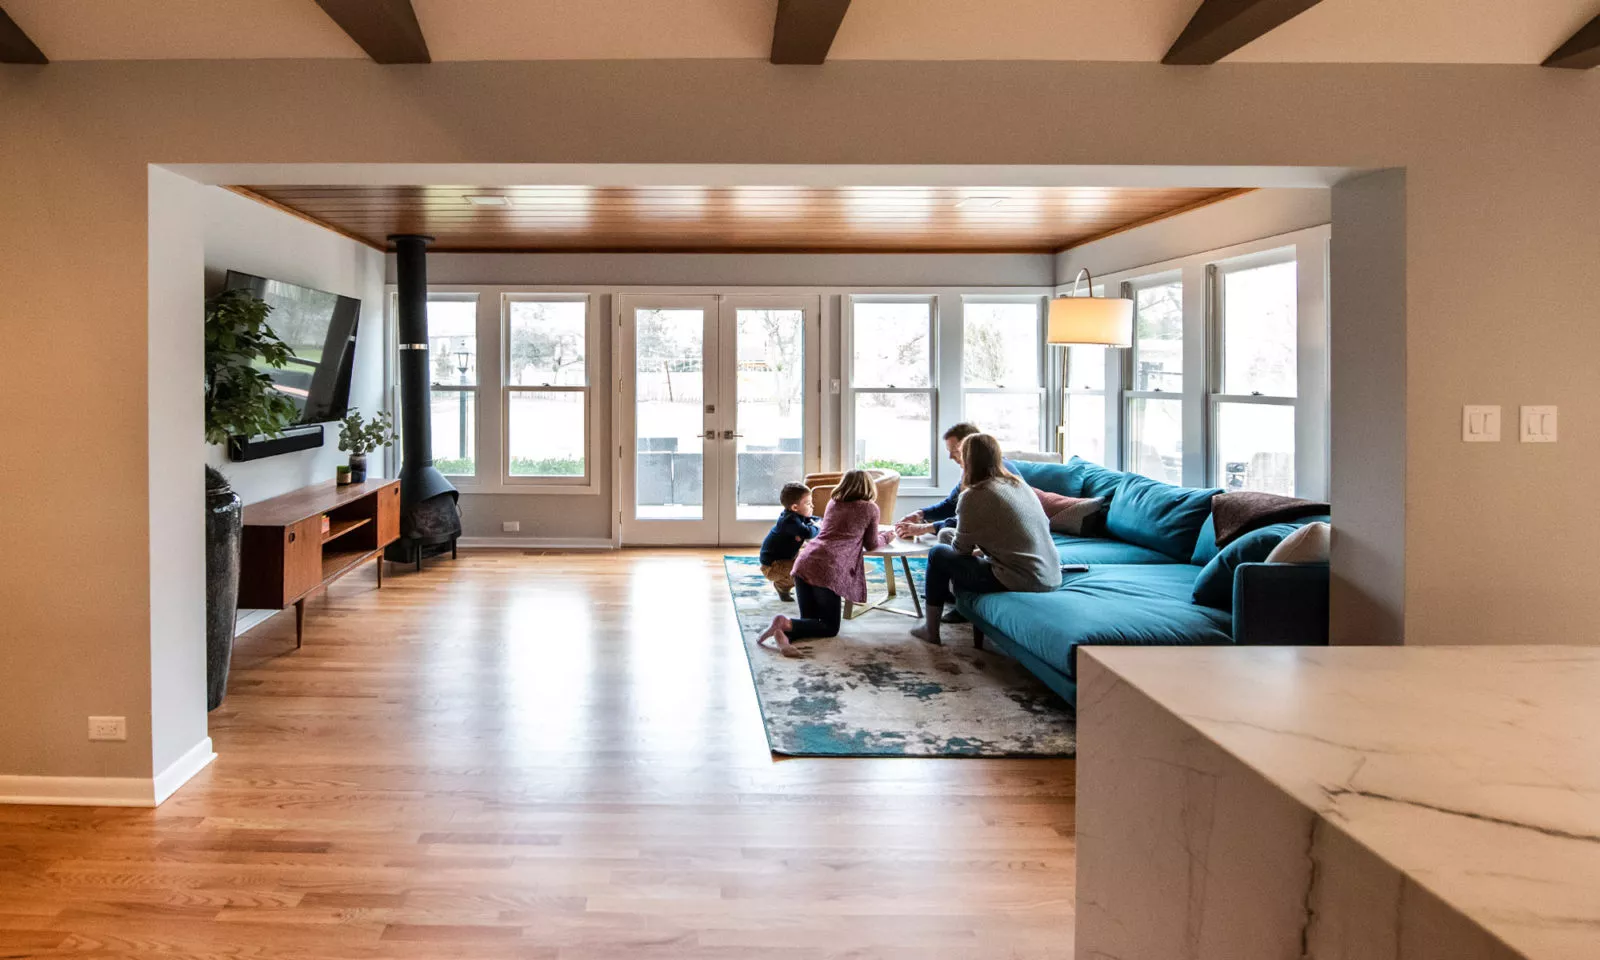 family in livco living room renovation on hardwood flooring white framed windows cast iron heater